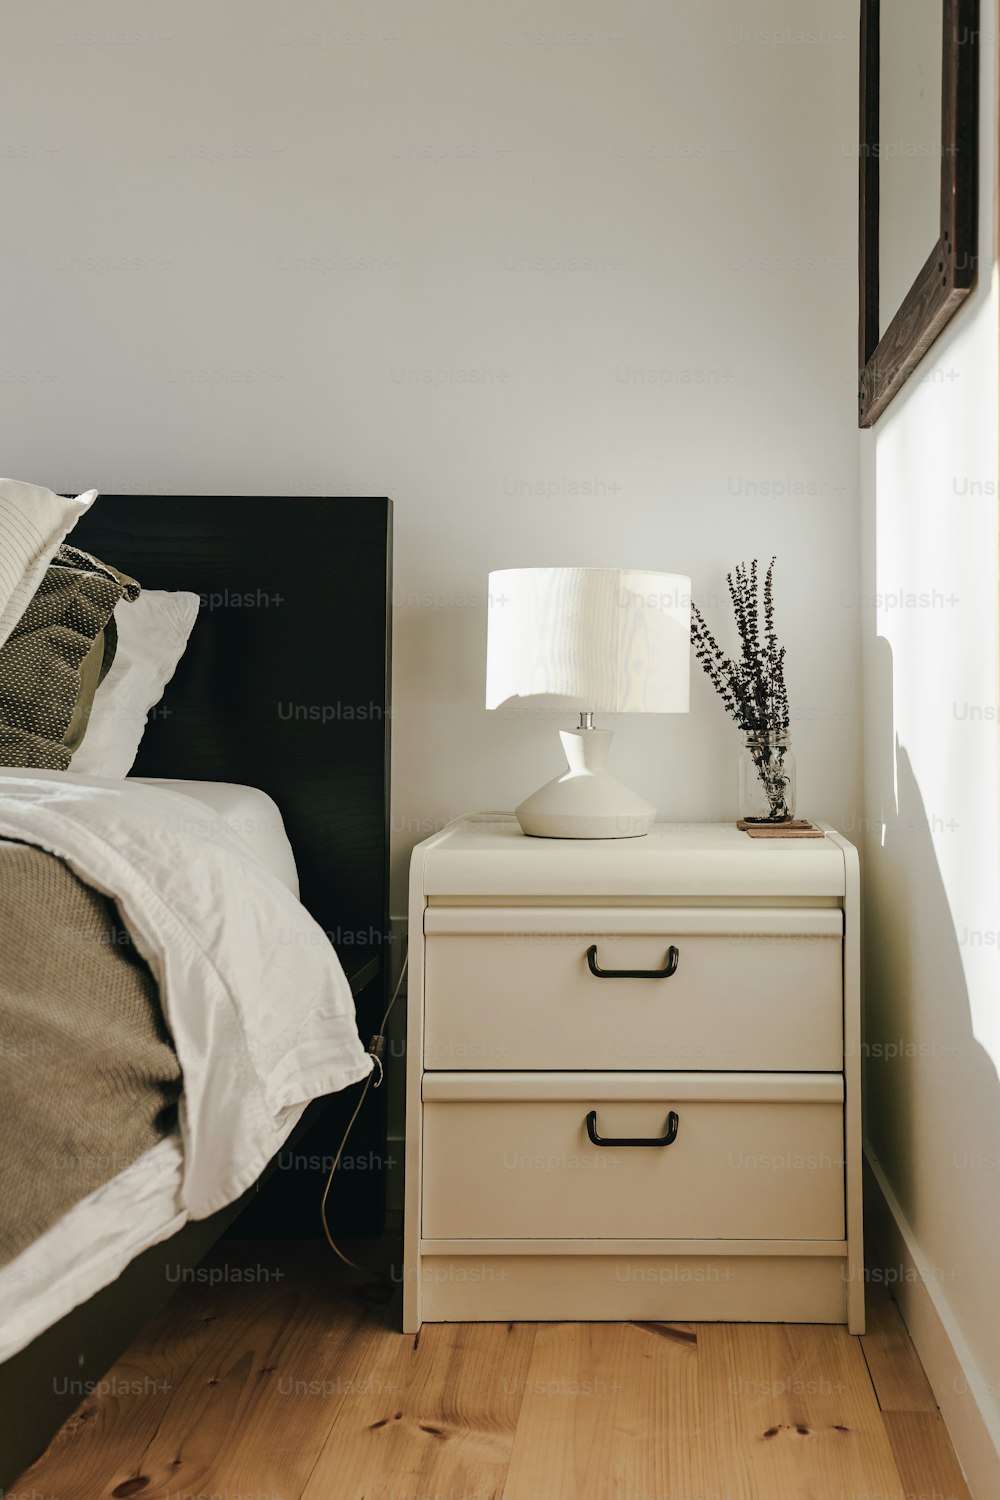 ein Schlafzimmer mit einem Bett und einem Nachttisch mit einer Lampe darauf